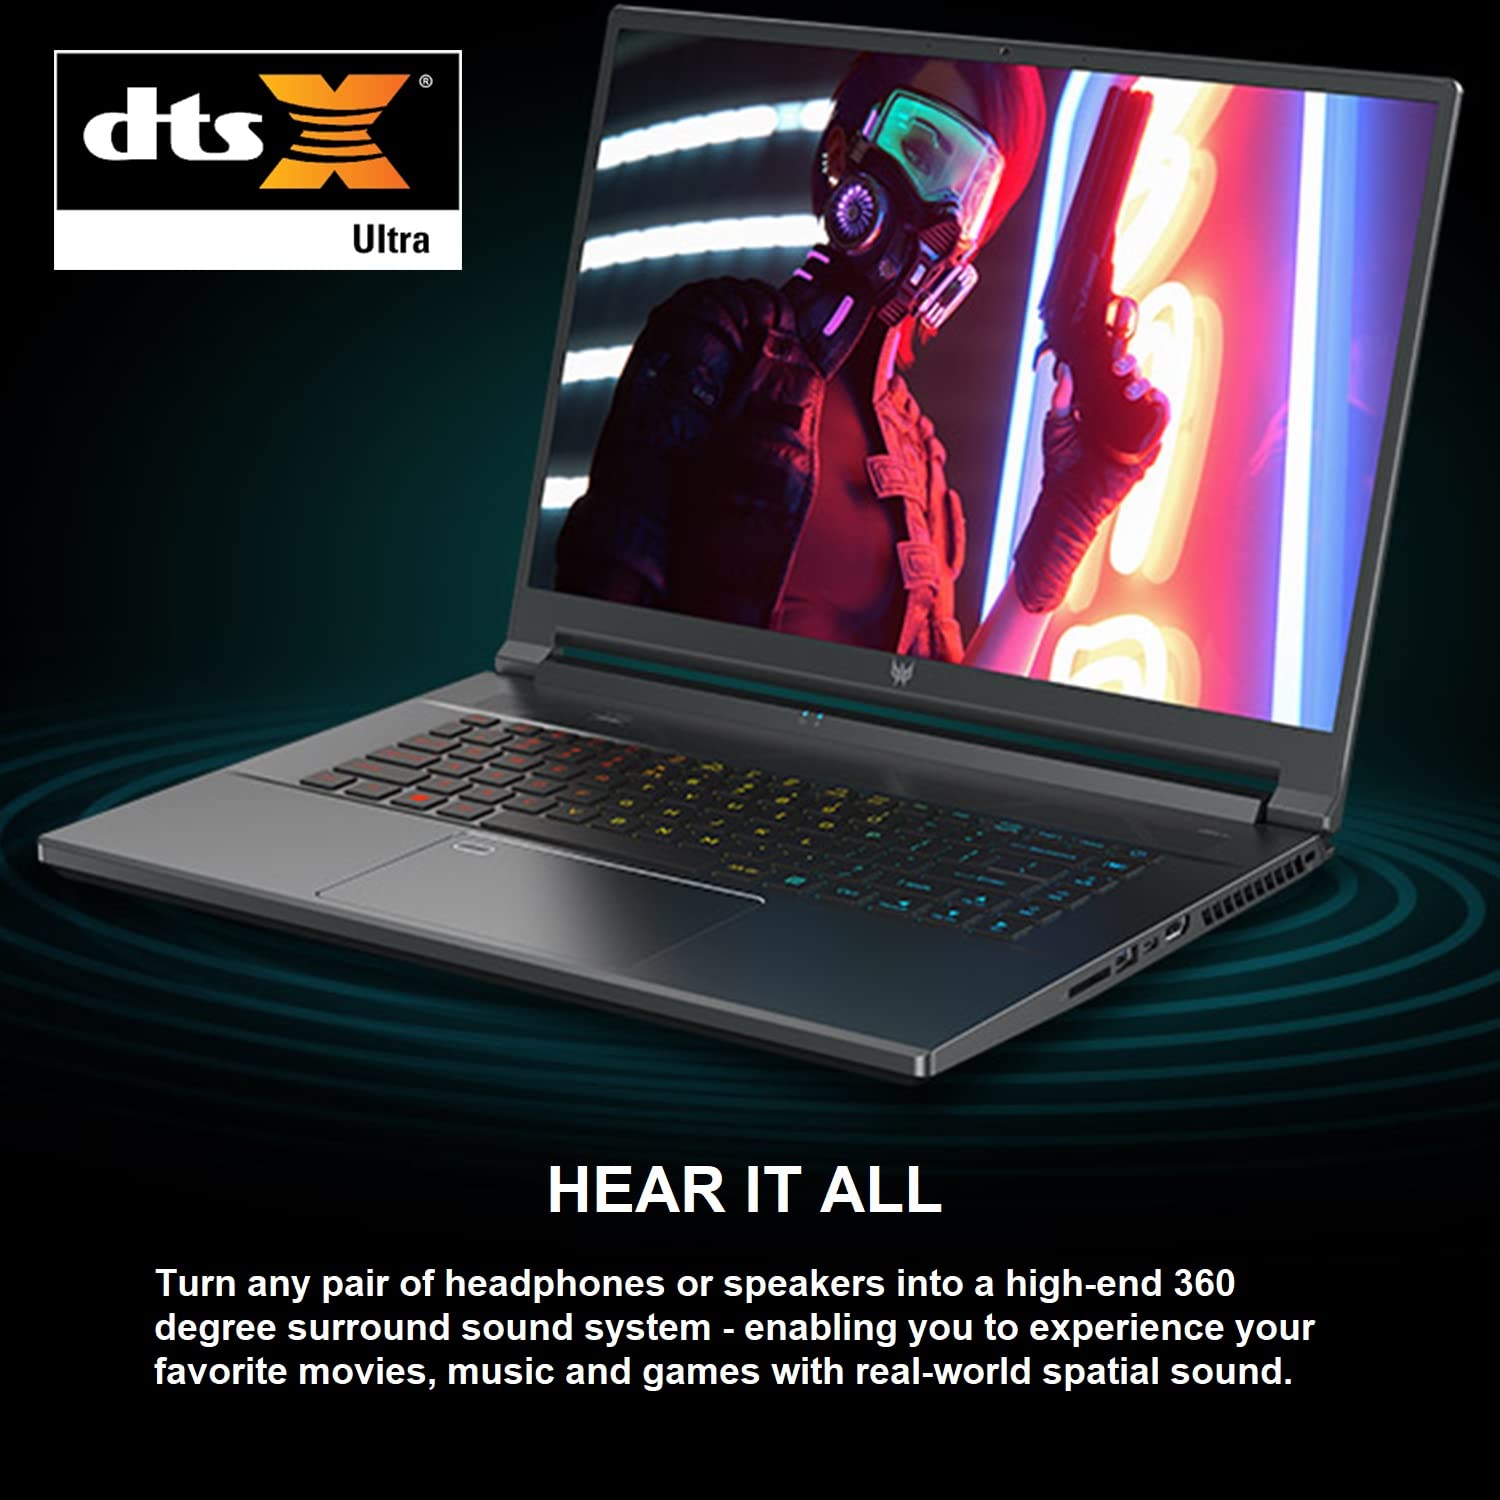 Acer Predator Triton 500 SE Gaming/Creator Laptop | 12th Gen Intel i9-12900H | GeForce RTX 3080 Ti | 16